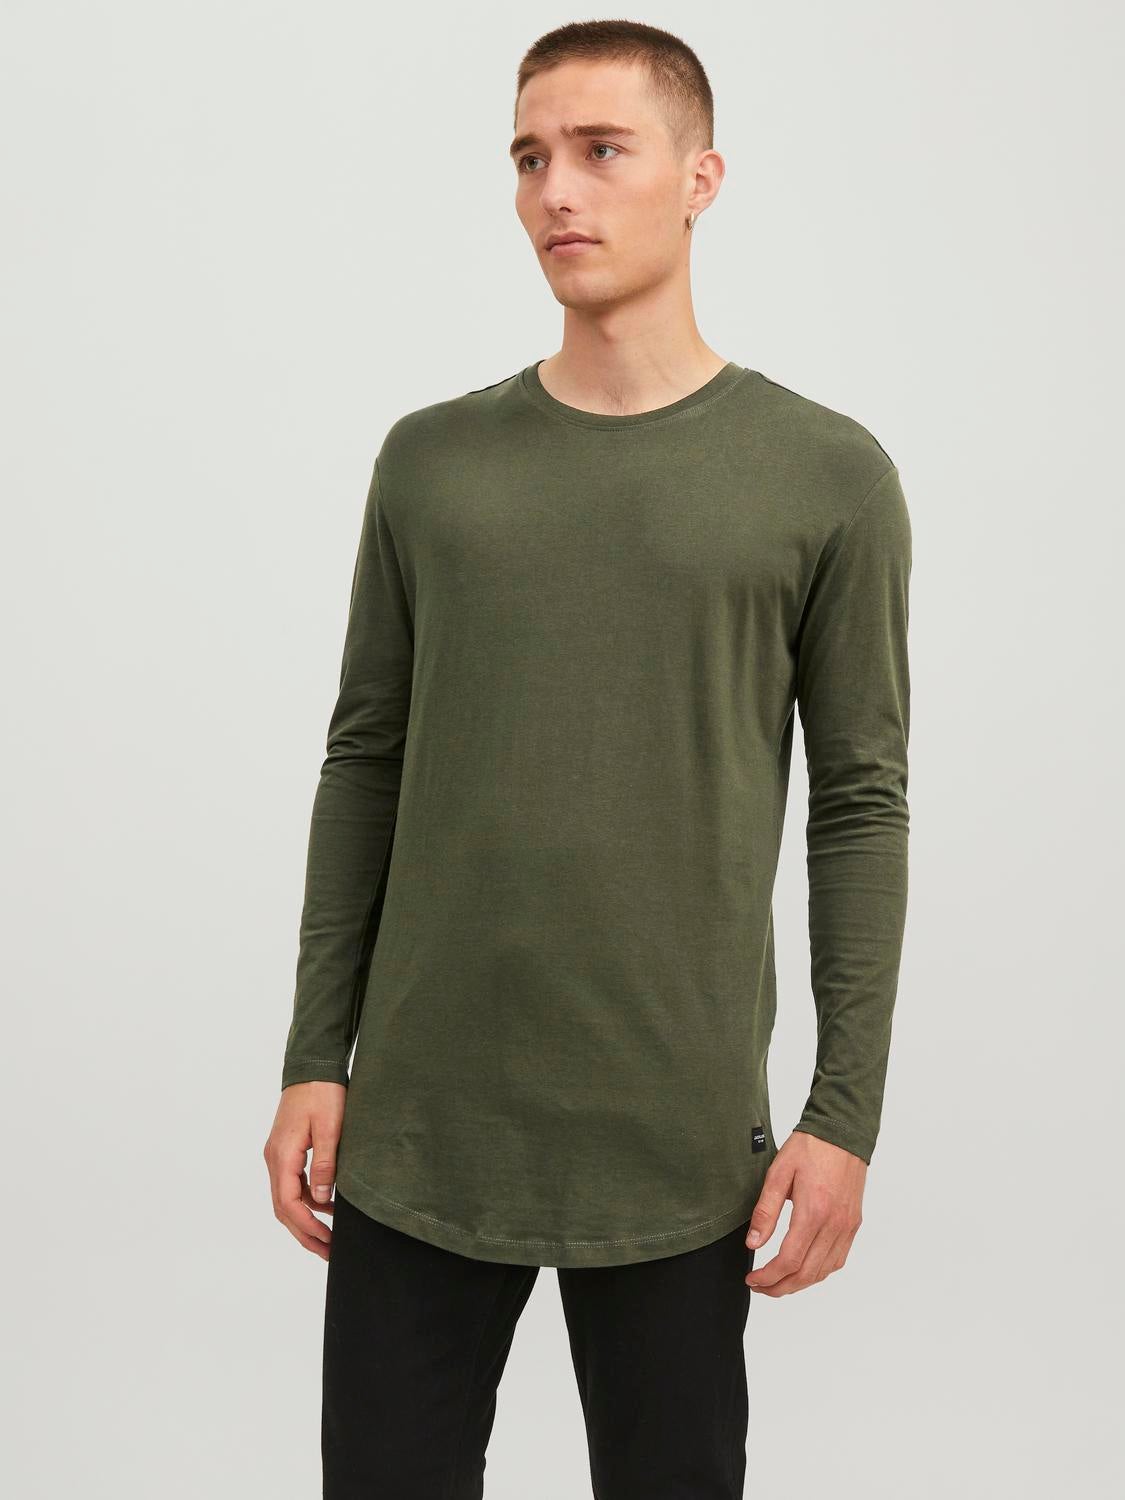 Jack & Jones T-shirt Verde L MODA UOMO Camicie & T-shirt Custom fit sconto 70% 